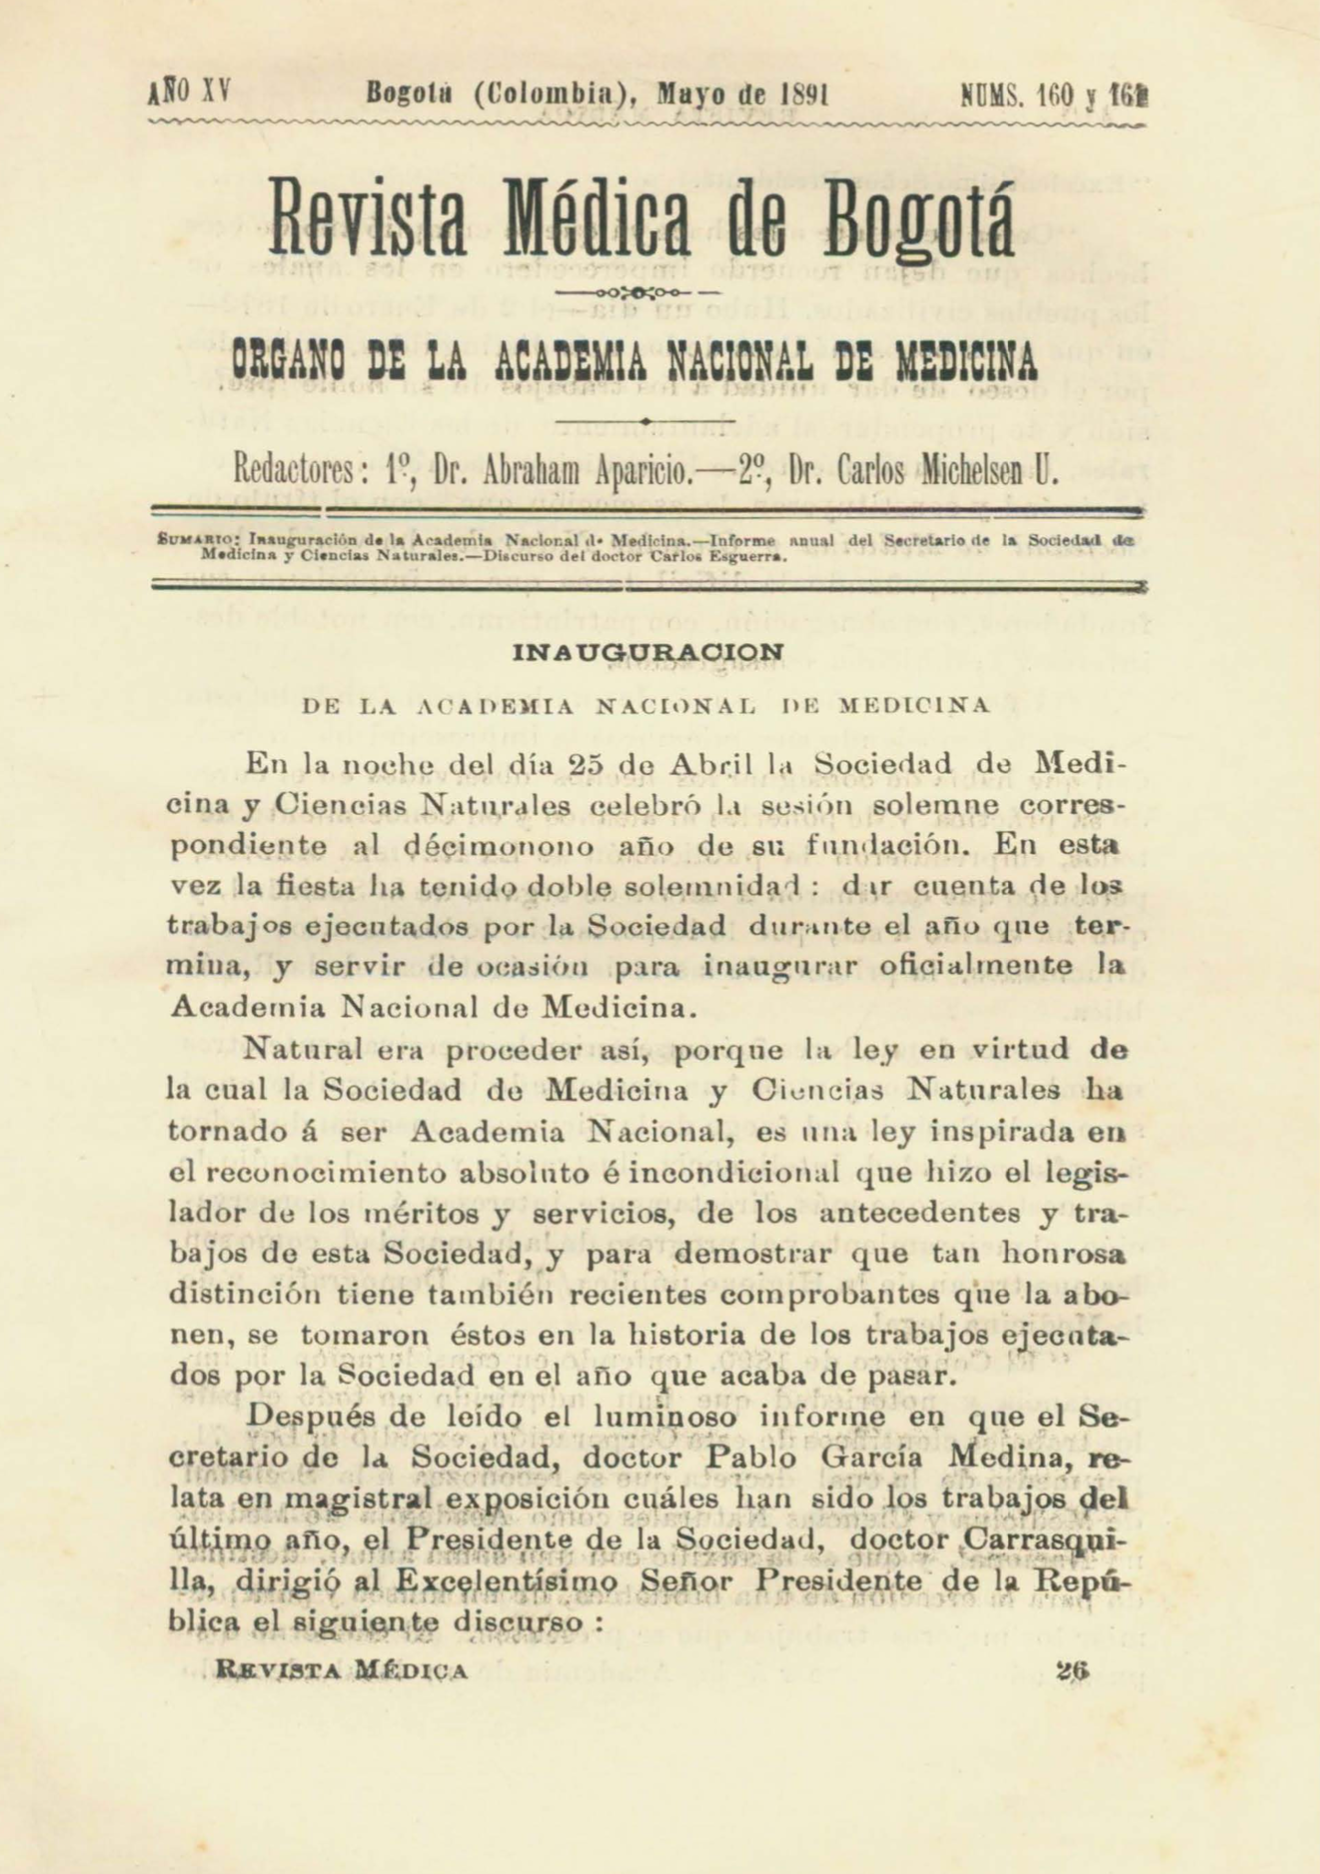 					Ver Vol. 15 Núm. 160-161 (1891): Revista Médica de Bogotá. Serie 15. Mayo de 1891. Núm. 160-161
				